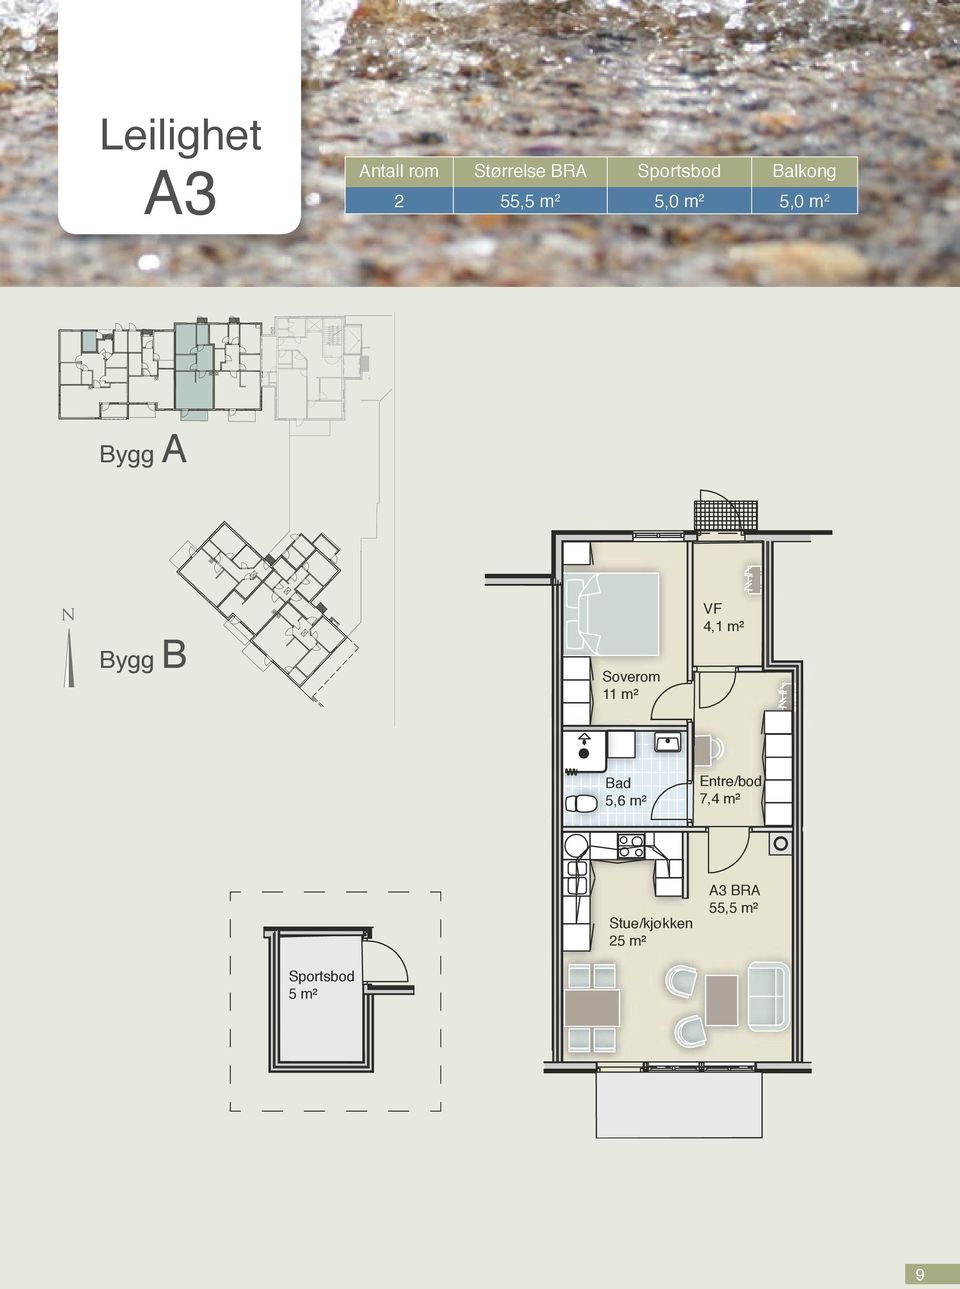 Bygg B 11 m² VF 4,1 m² 5,6 m² Entre/bod 7,4 m²